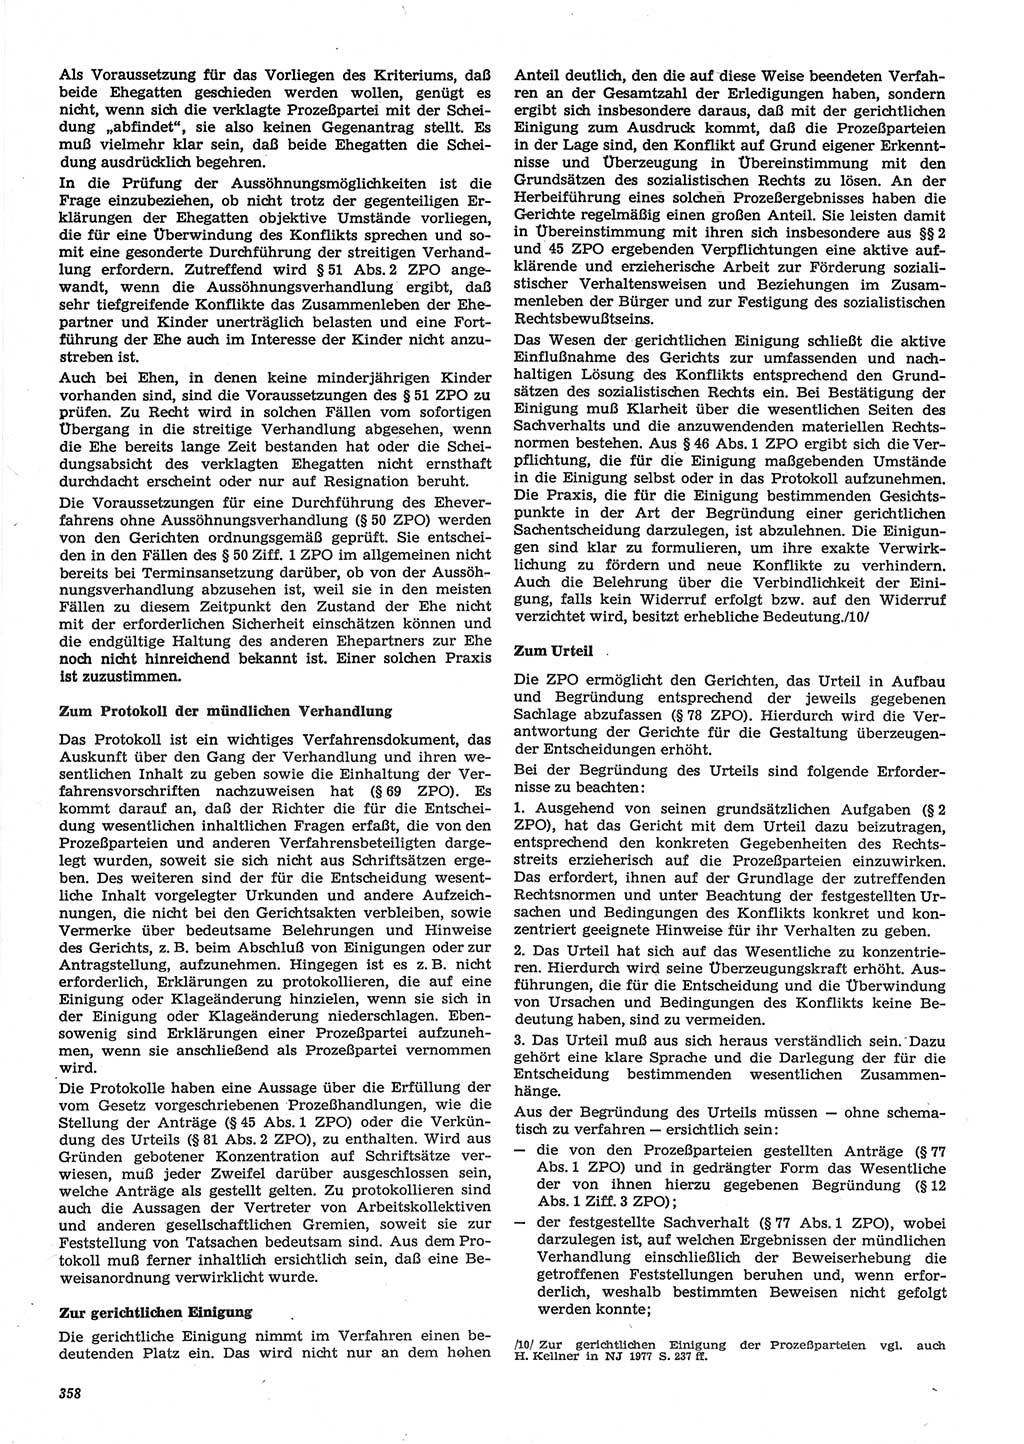 Neue Justiz (NJ), Zeitschrift für Recht und Rechtswissenschaft-Zeitschrift, sozialistisches Recht und Gesetzlichkeit, 31. Jahrgang 1977, Seite 358 (NJ DDR 1977, S. 358)